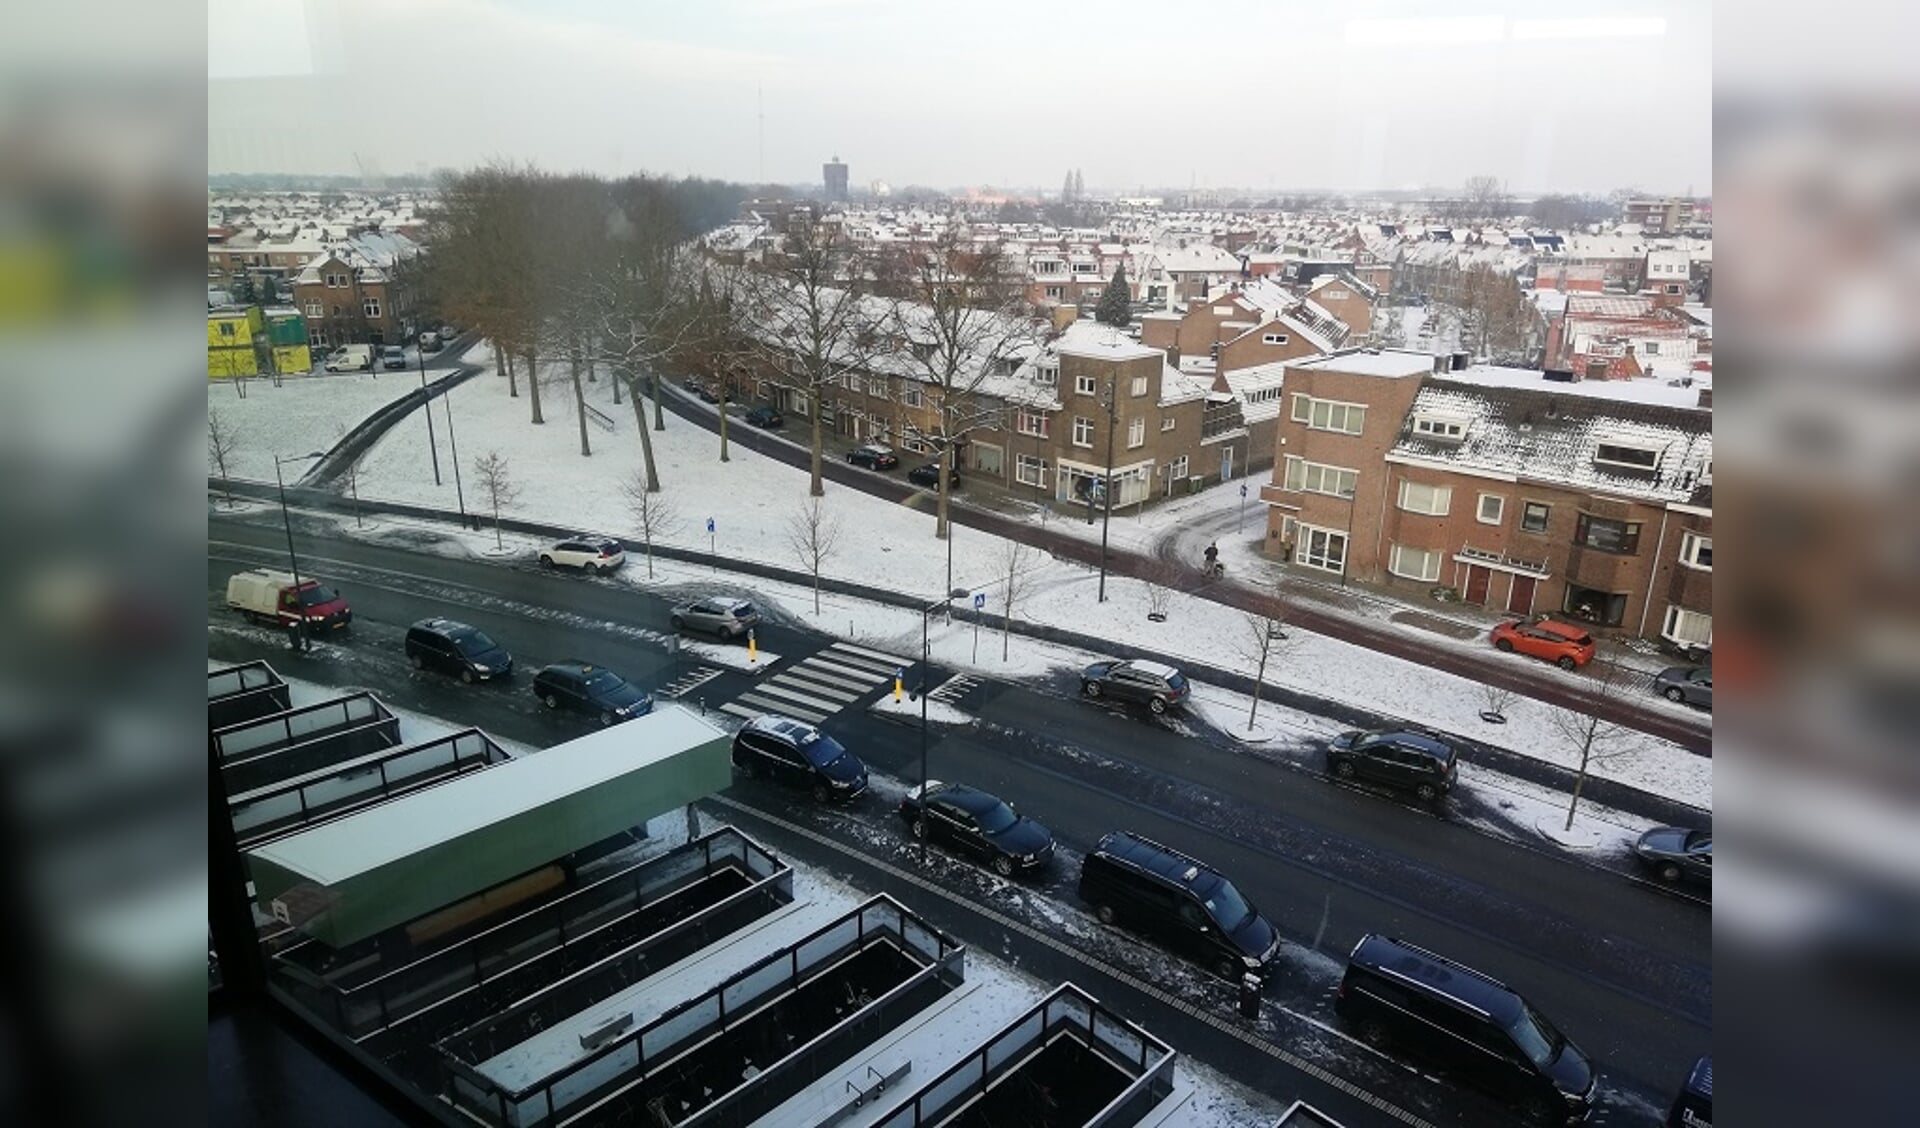 Breda vanaf het stationsdak gezien. Belcrum bedekt onder een laagje sneeuw.